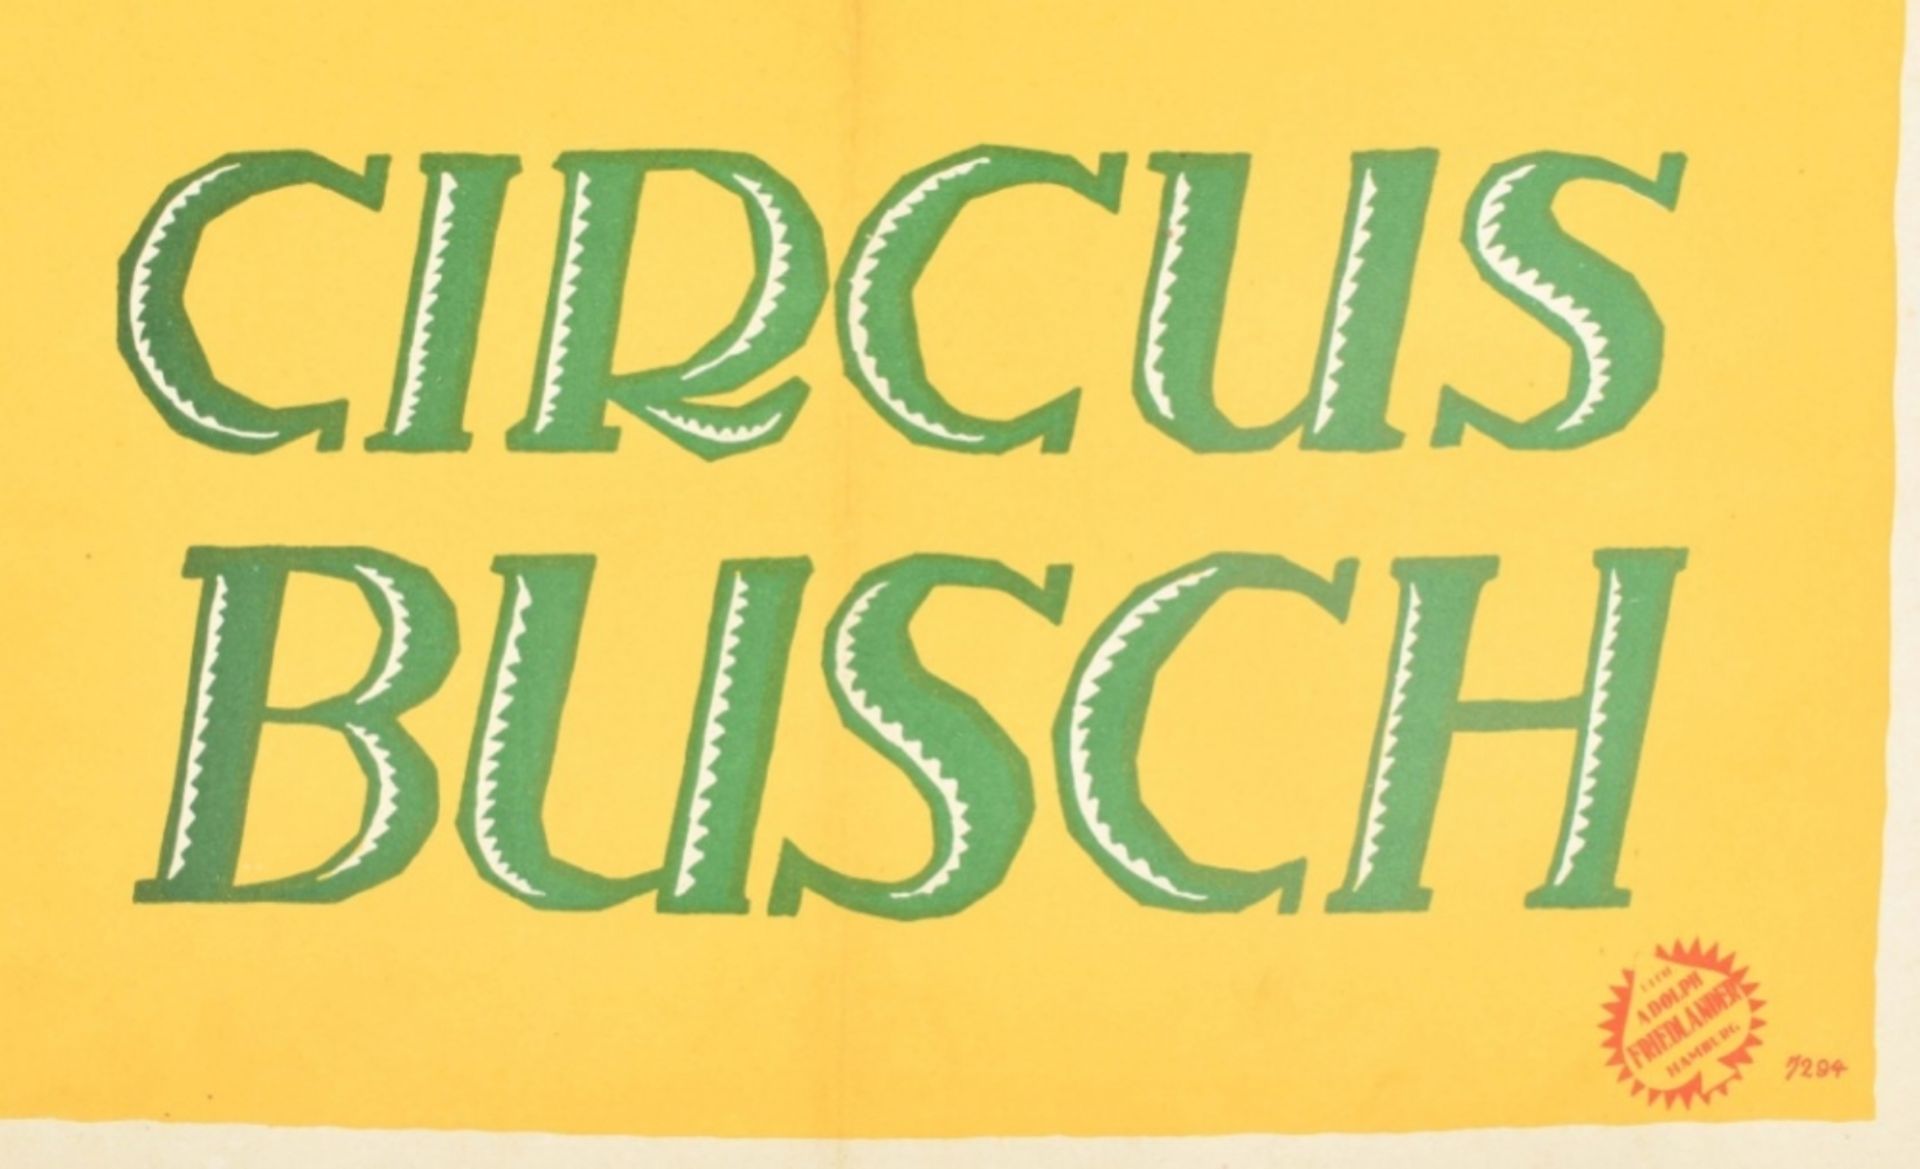 [Animal Dressage] Circus Busch. Hans Reyersbach (1898 -1977) Grace Haston als gast. Friedländer, 192 - Image 3 of 4